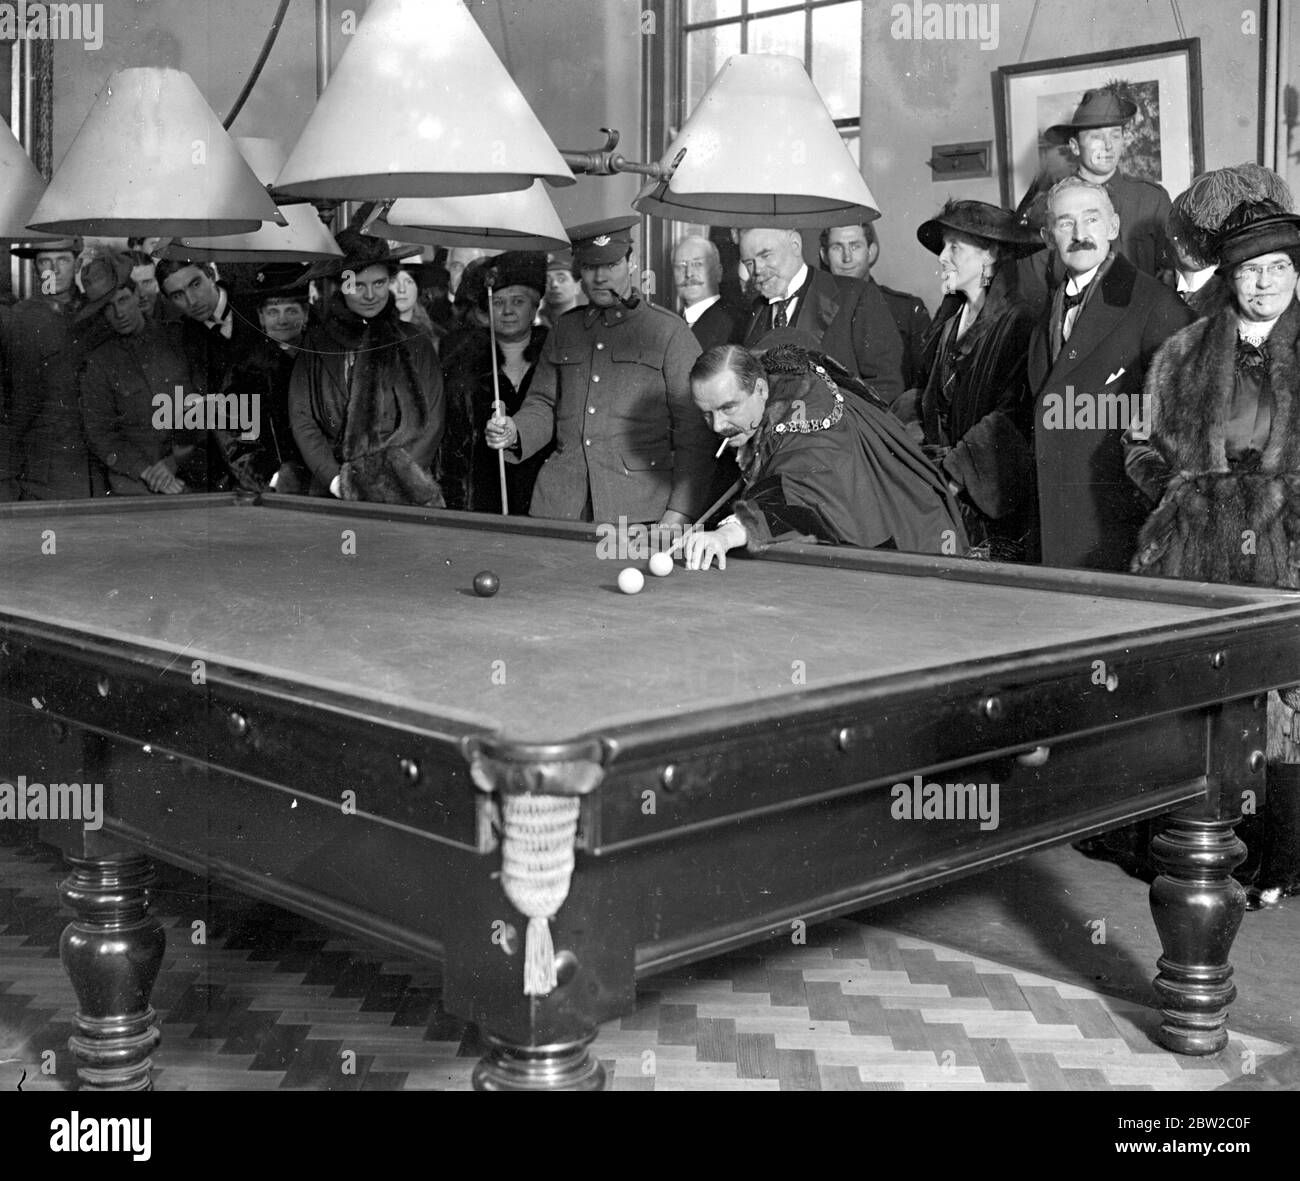 Il sindaco del Signore visita il club d'oltremare e gioca a biliardo con un australiano. 1914 - 1918 Foto Stock